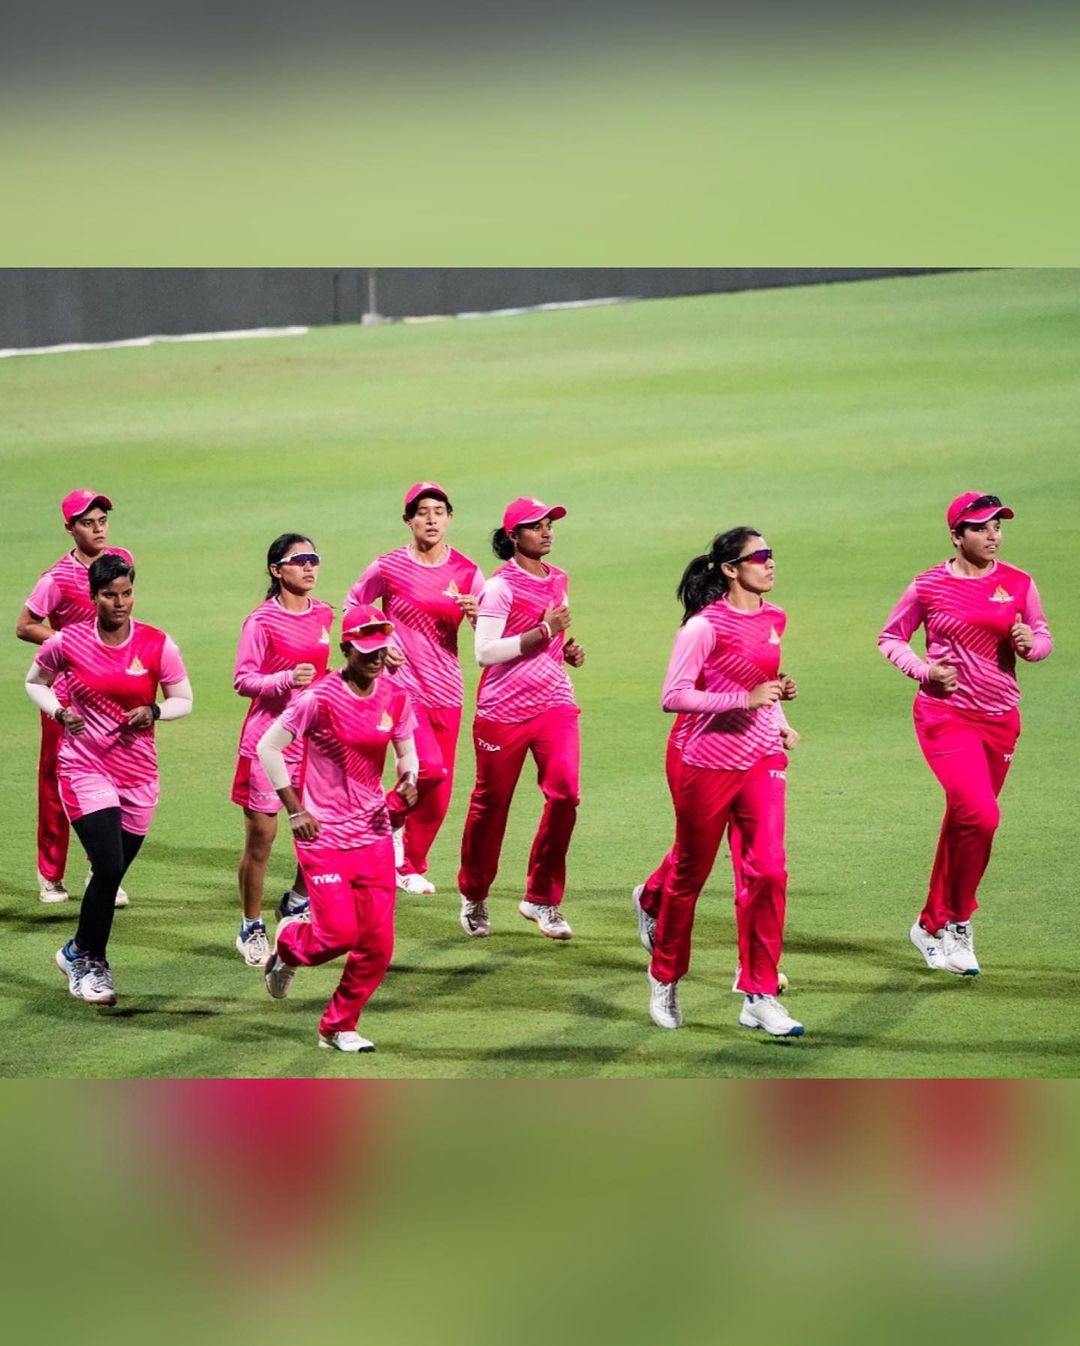 Smriti Mandhana, Harmanpreet Kaur hail T20 challenge as stepping stone for Women’s IPL